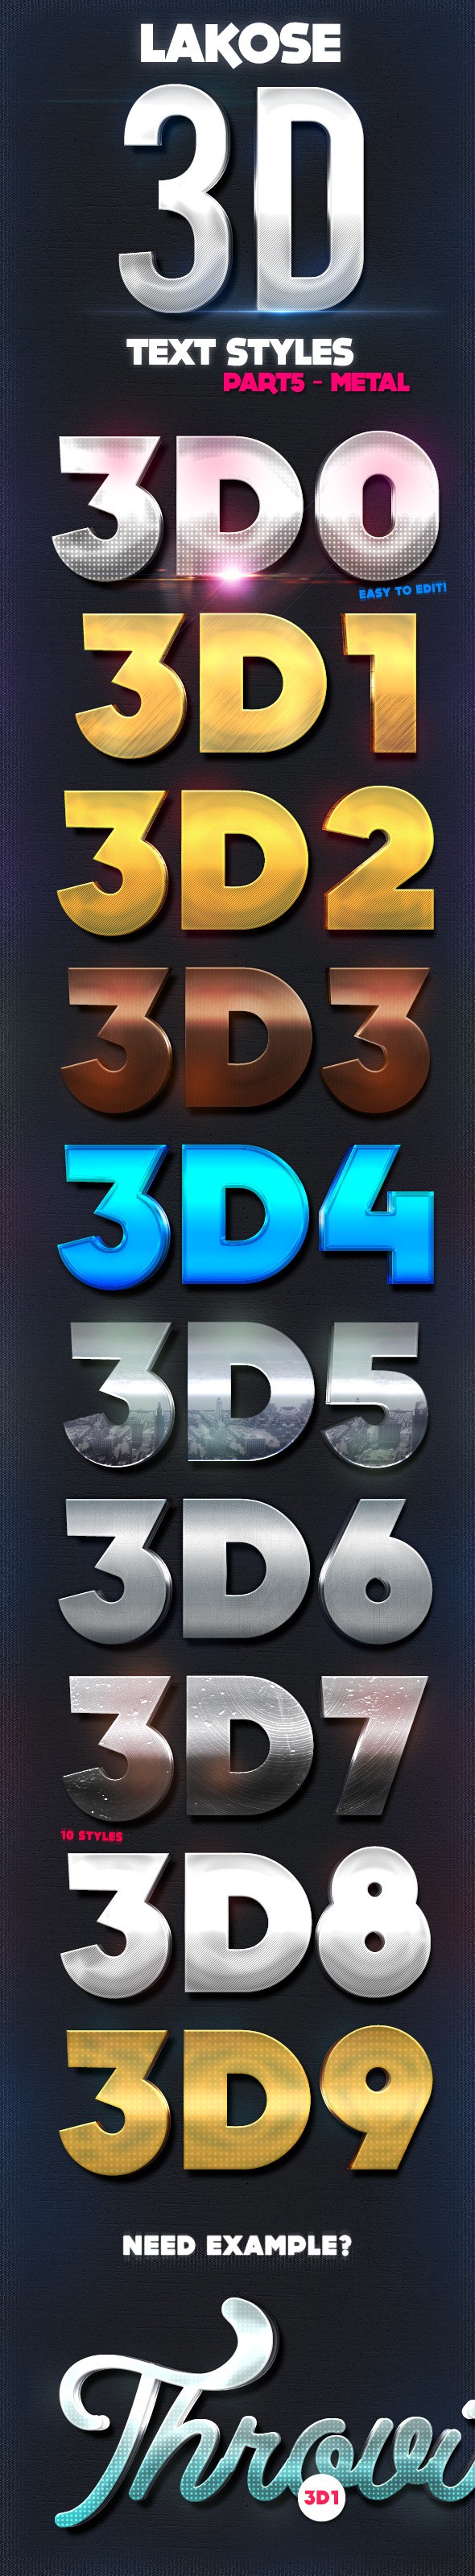 سبک های متن سه بعدی 3D Lakose قسمت 5